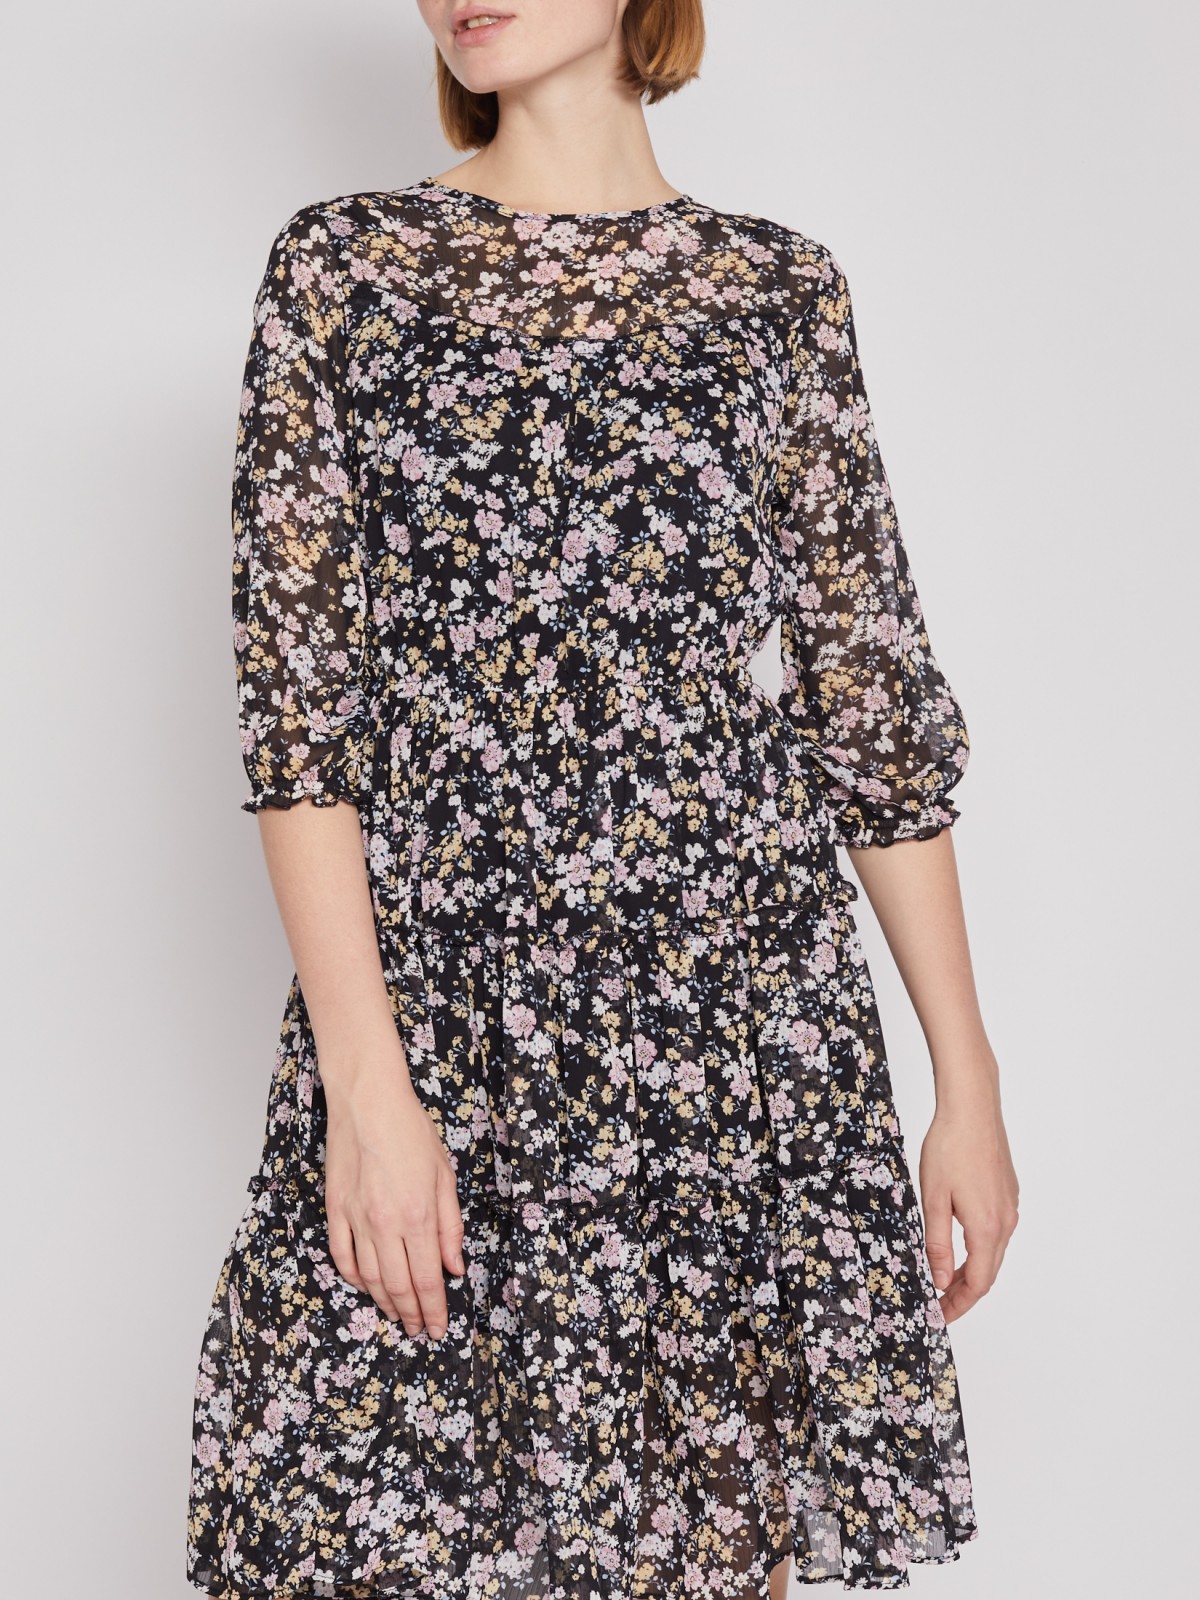 Шифоновое платье с цветочным принтом zolla 222138262263, размер XS - фото 3